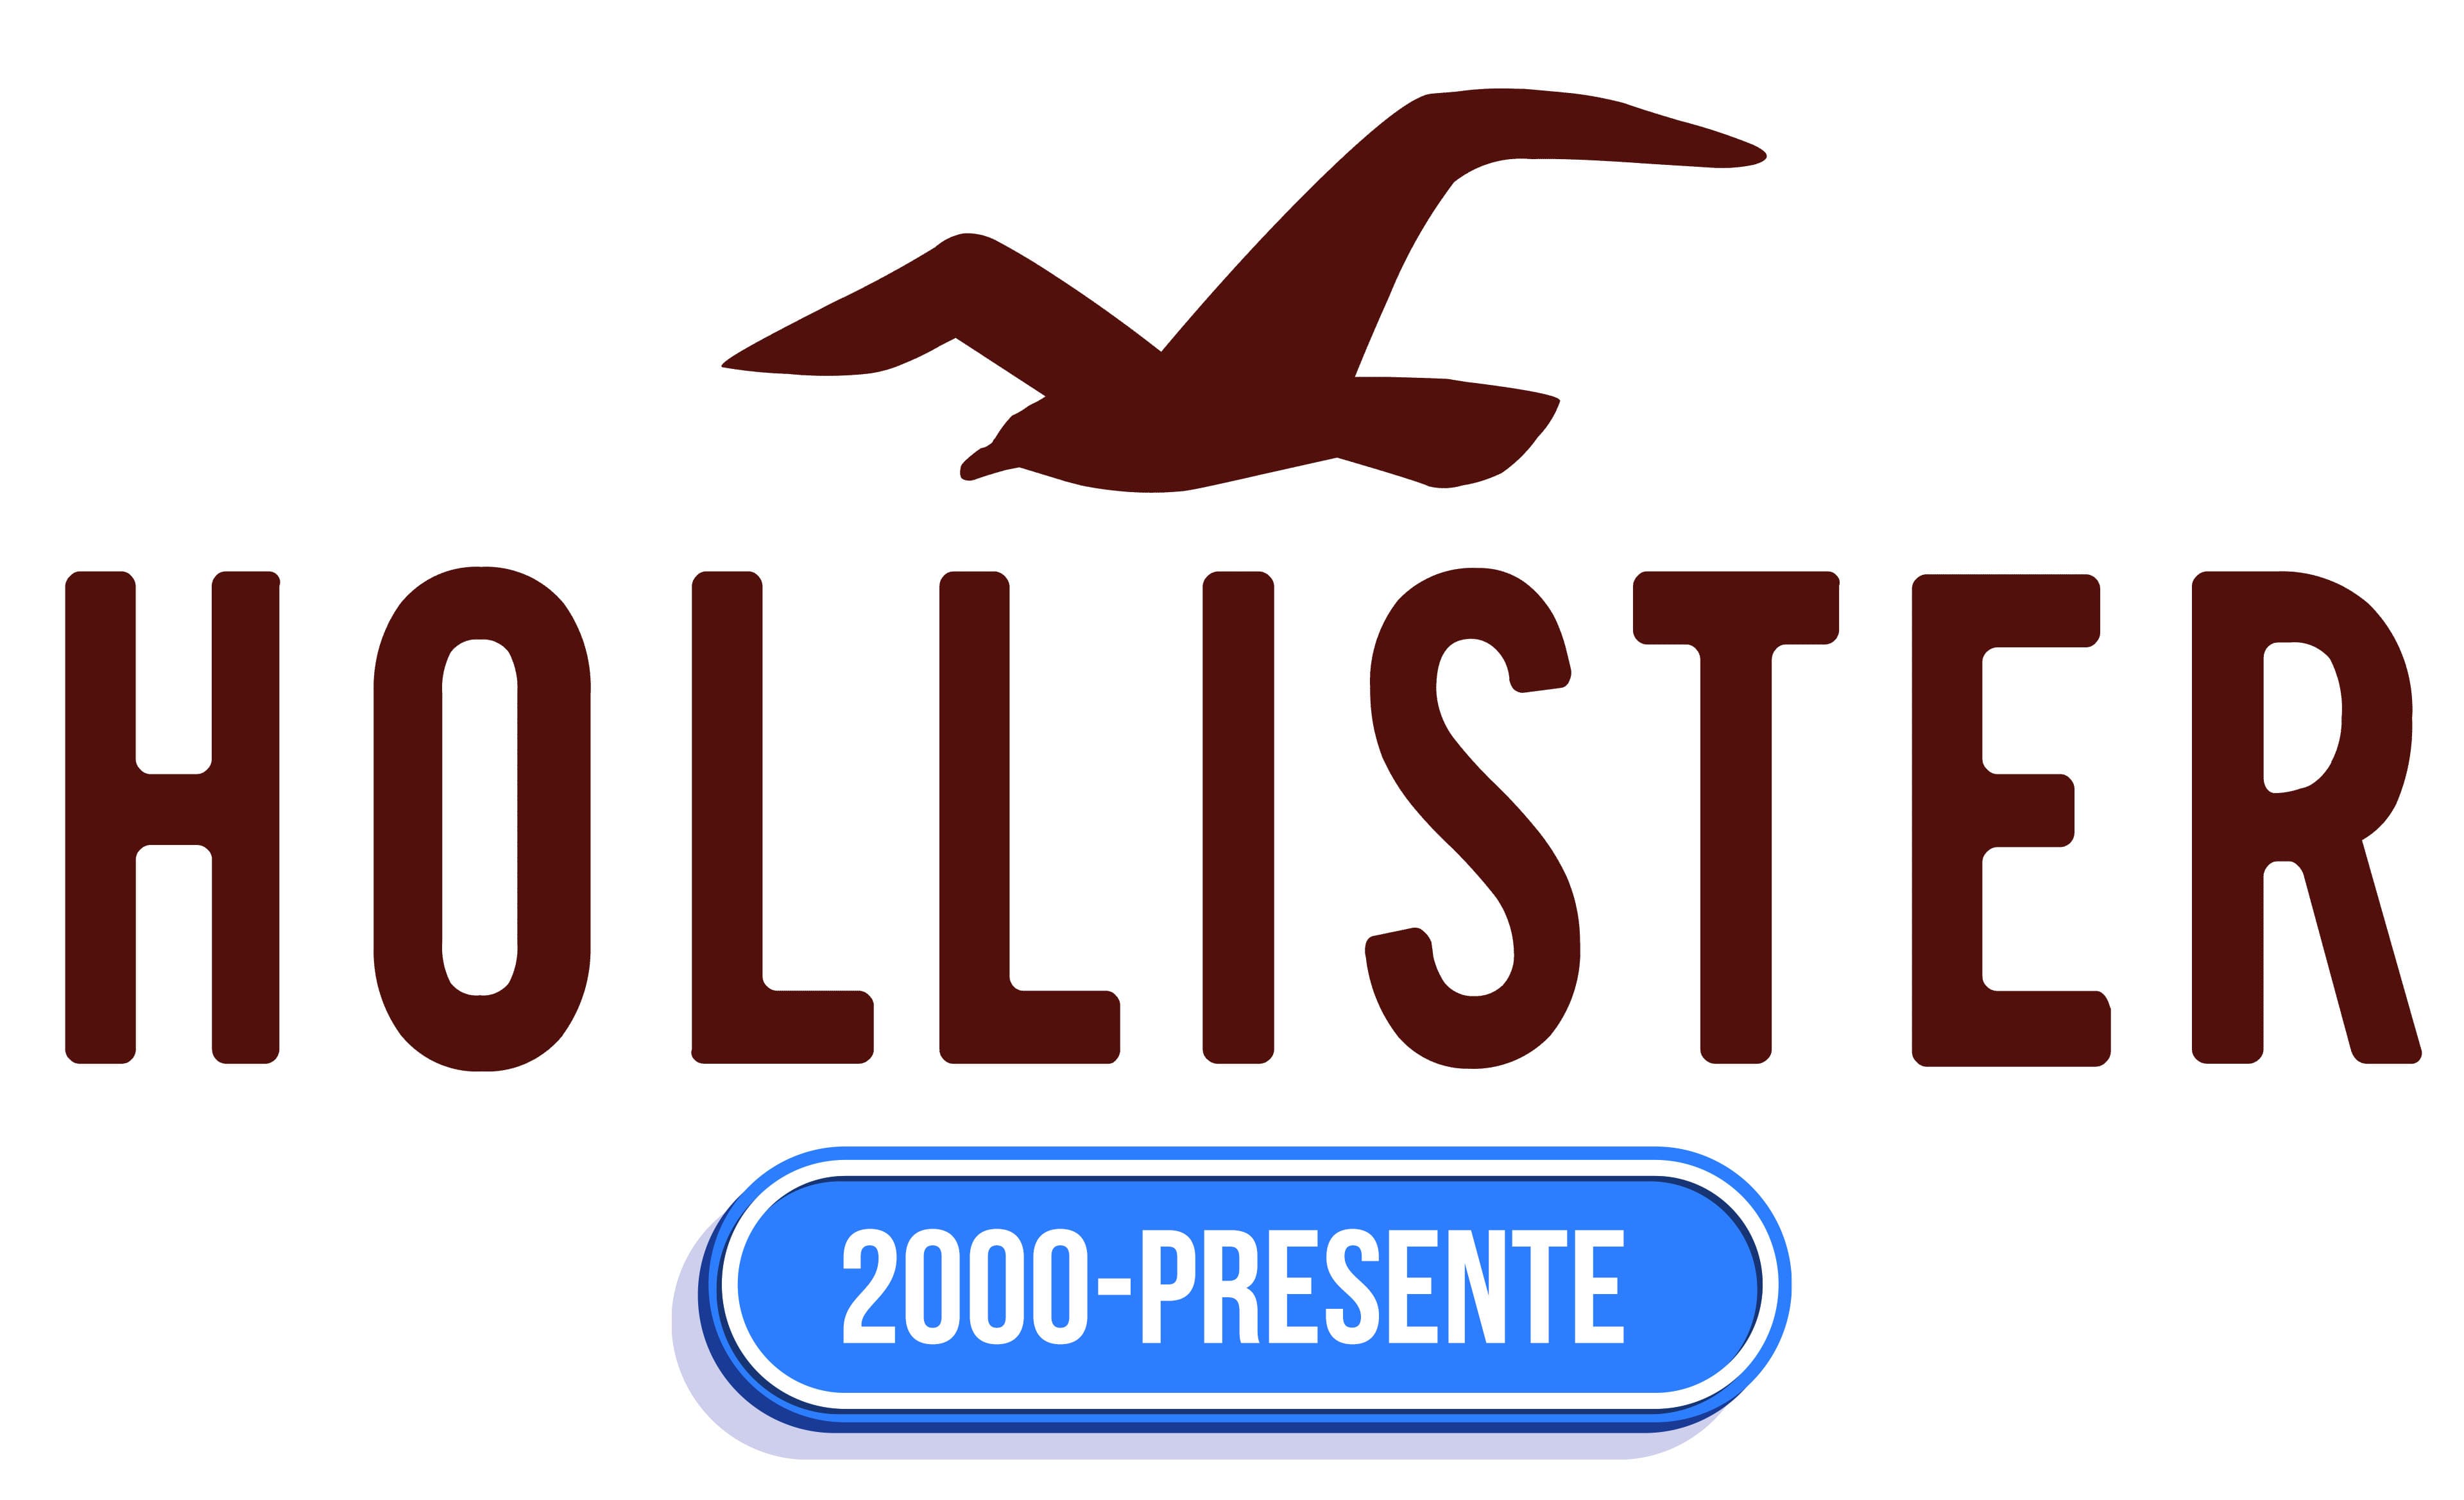 Hollister Logo Significado Del Logotipo, Png, Vector | art-kk.com